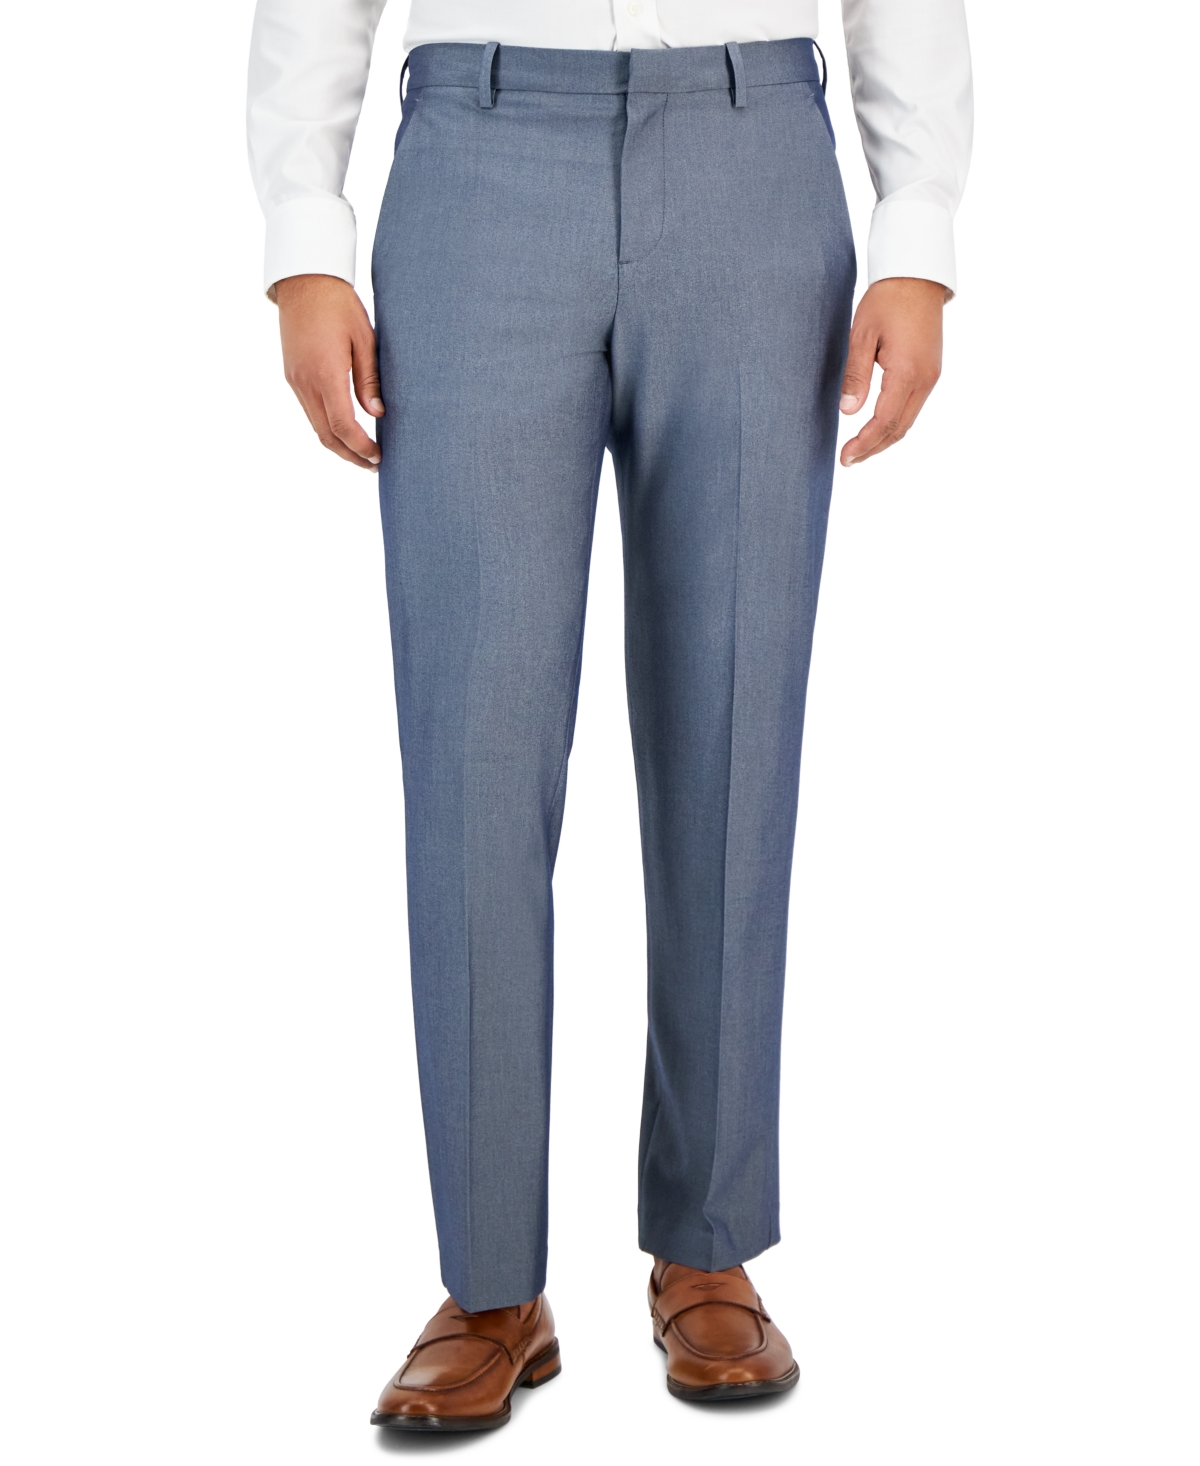 Men's Modern-Fit Check Dress Pants - Med Gray